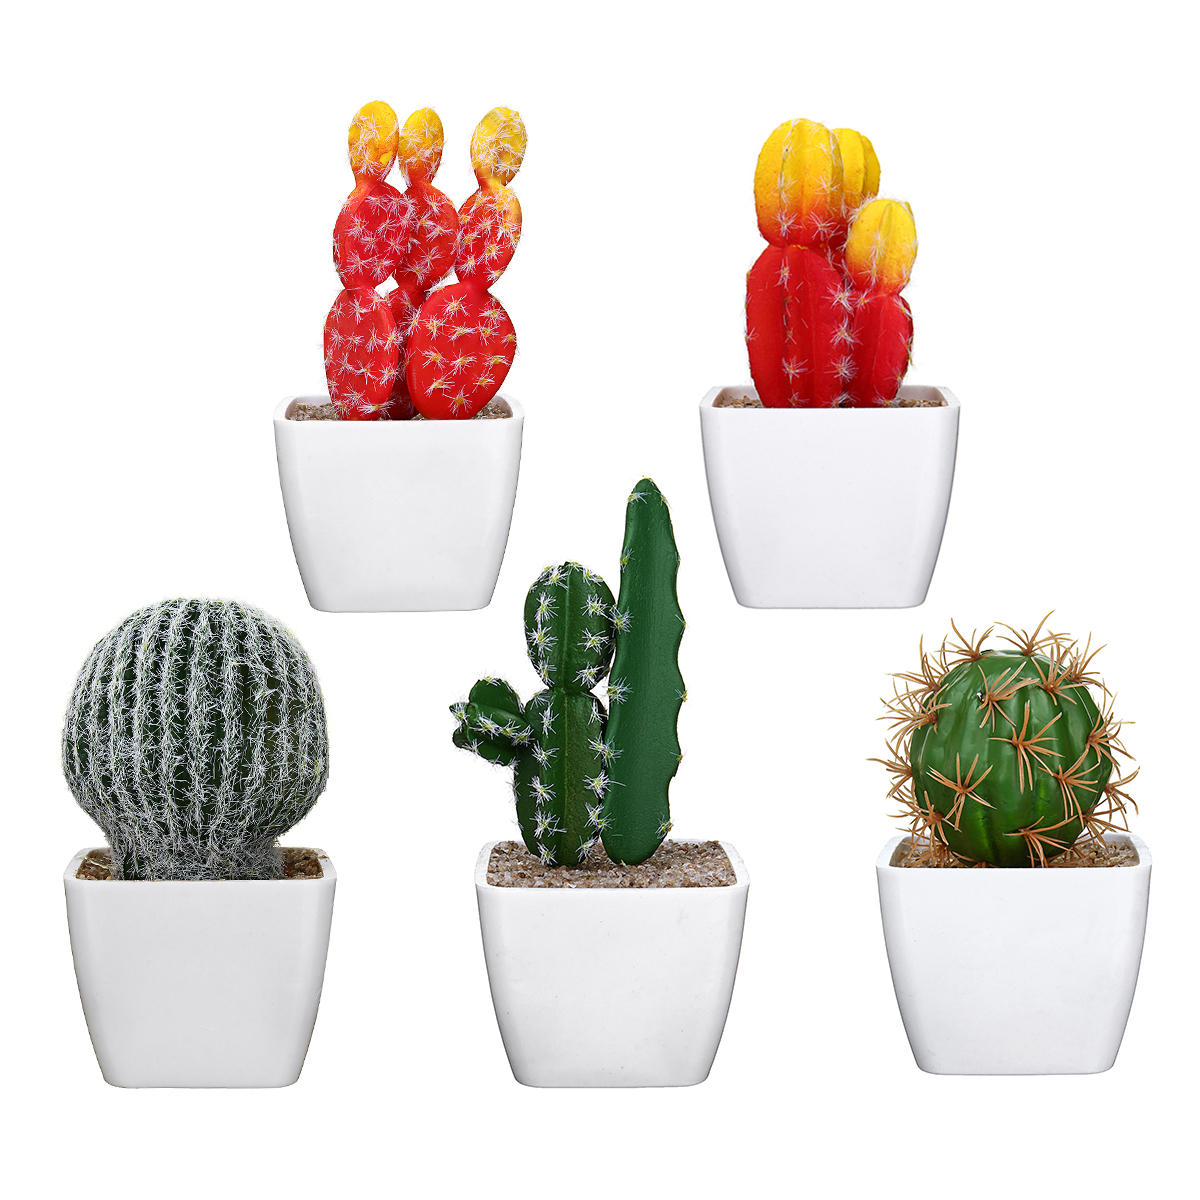 Het simuleren van Cactus-bonsai en het simuleren van creatieve auto-ornamenten van mock succulents p